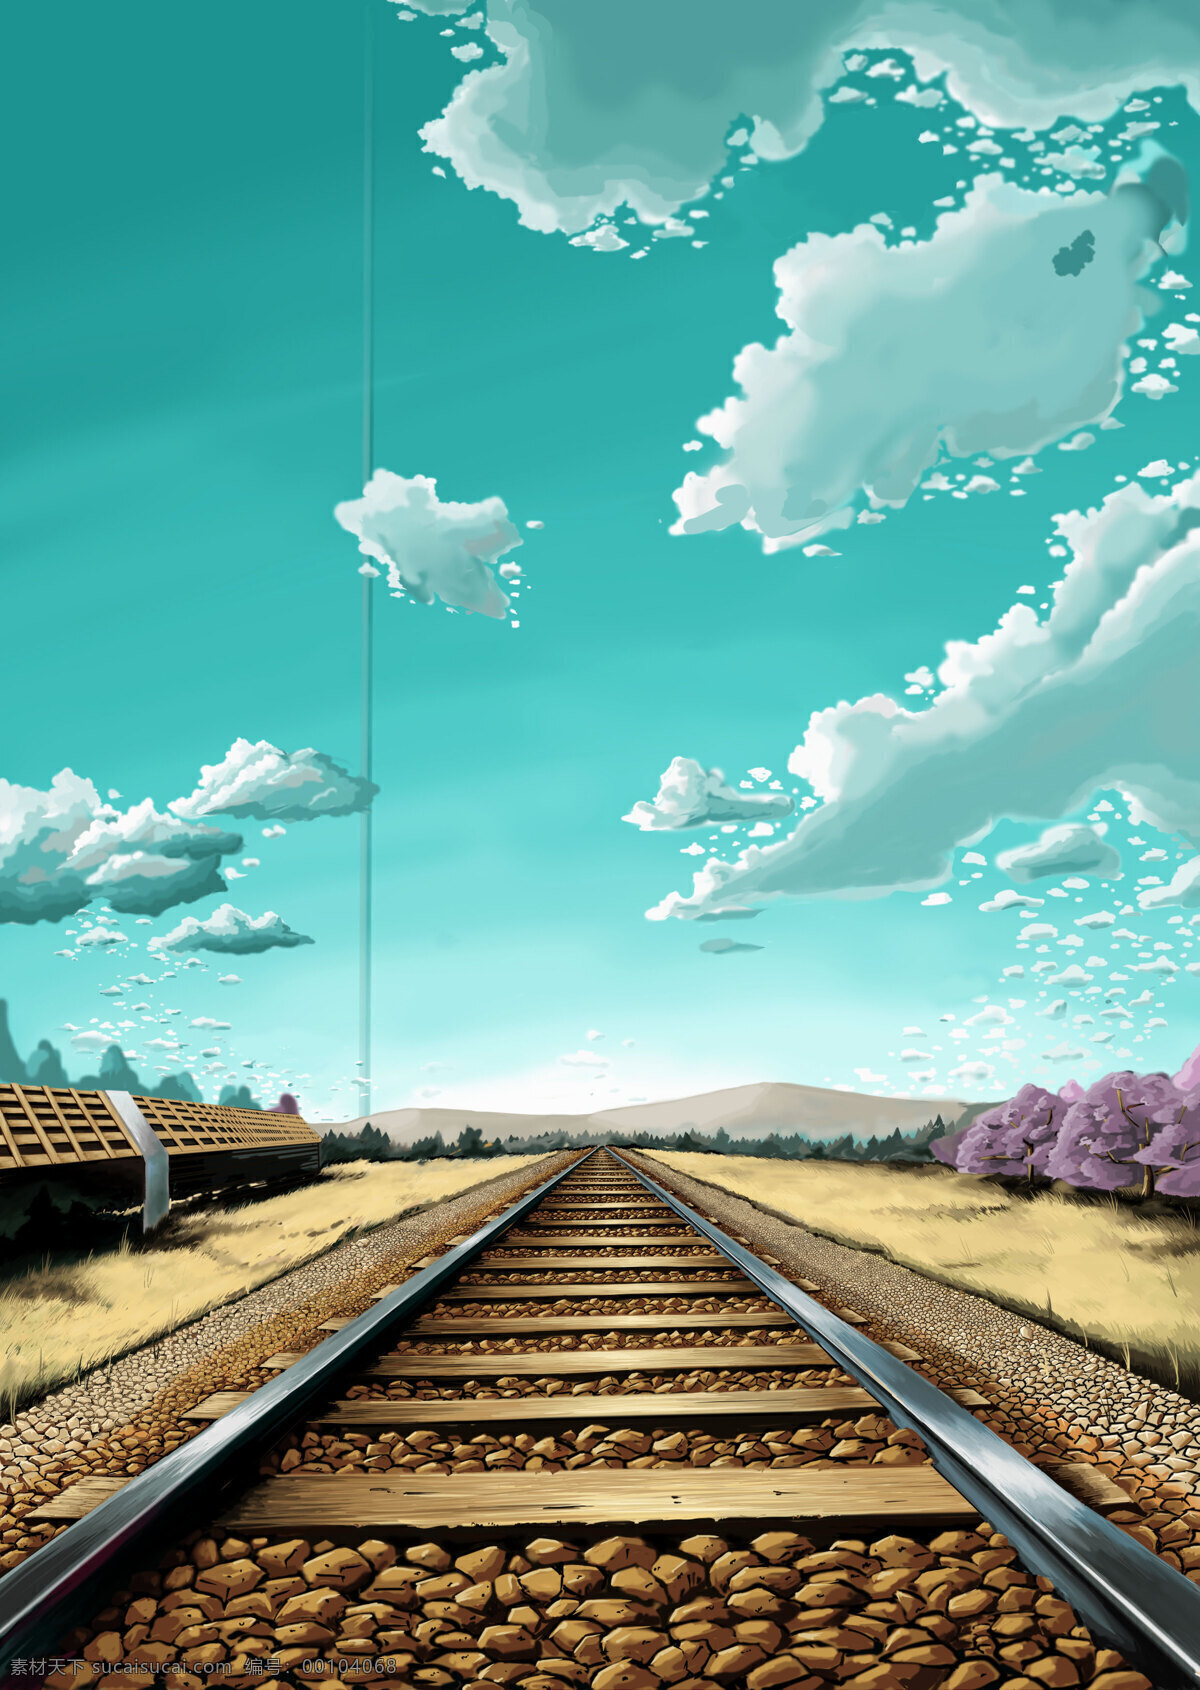 壁纸 动漫动画 风景 风景漫画 蓝天 漫画 设计素材 手绘风景 铁路 模板下载 蓝天铁路 卡通 动漫 可爱